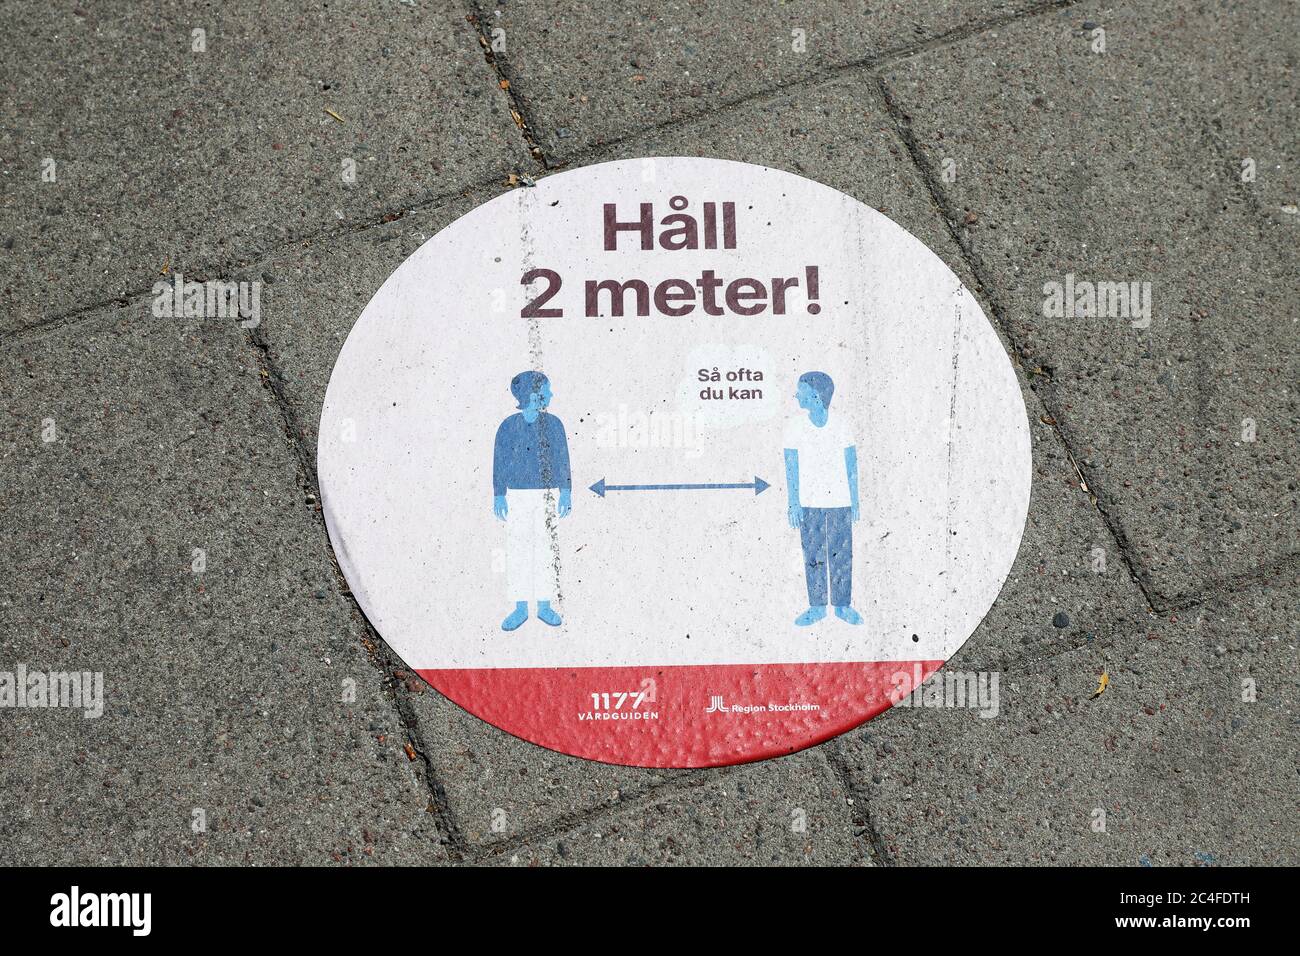 Nynashamn, Schweden - 26. Juni 2020: Aufkleber auf dem Bürgersteig erinnert die Bürger, zwei Meter Abstand voneinander zu halten, um die Ausbreitung der Covi zu reduzieren Stockfoto